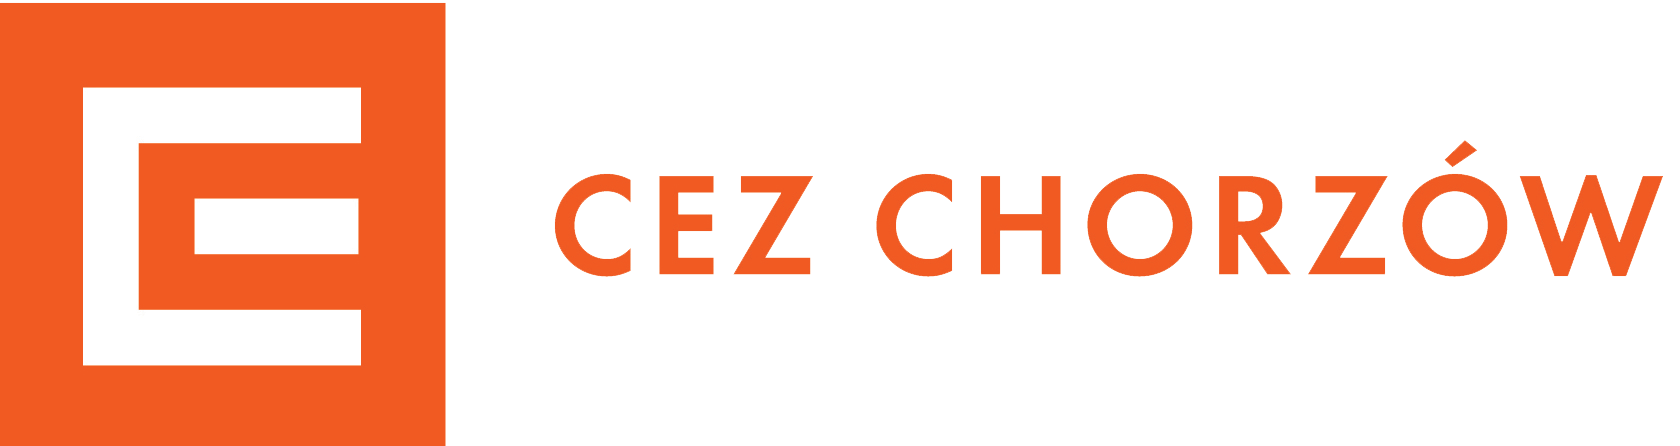 CEZ Chorzów logo